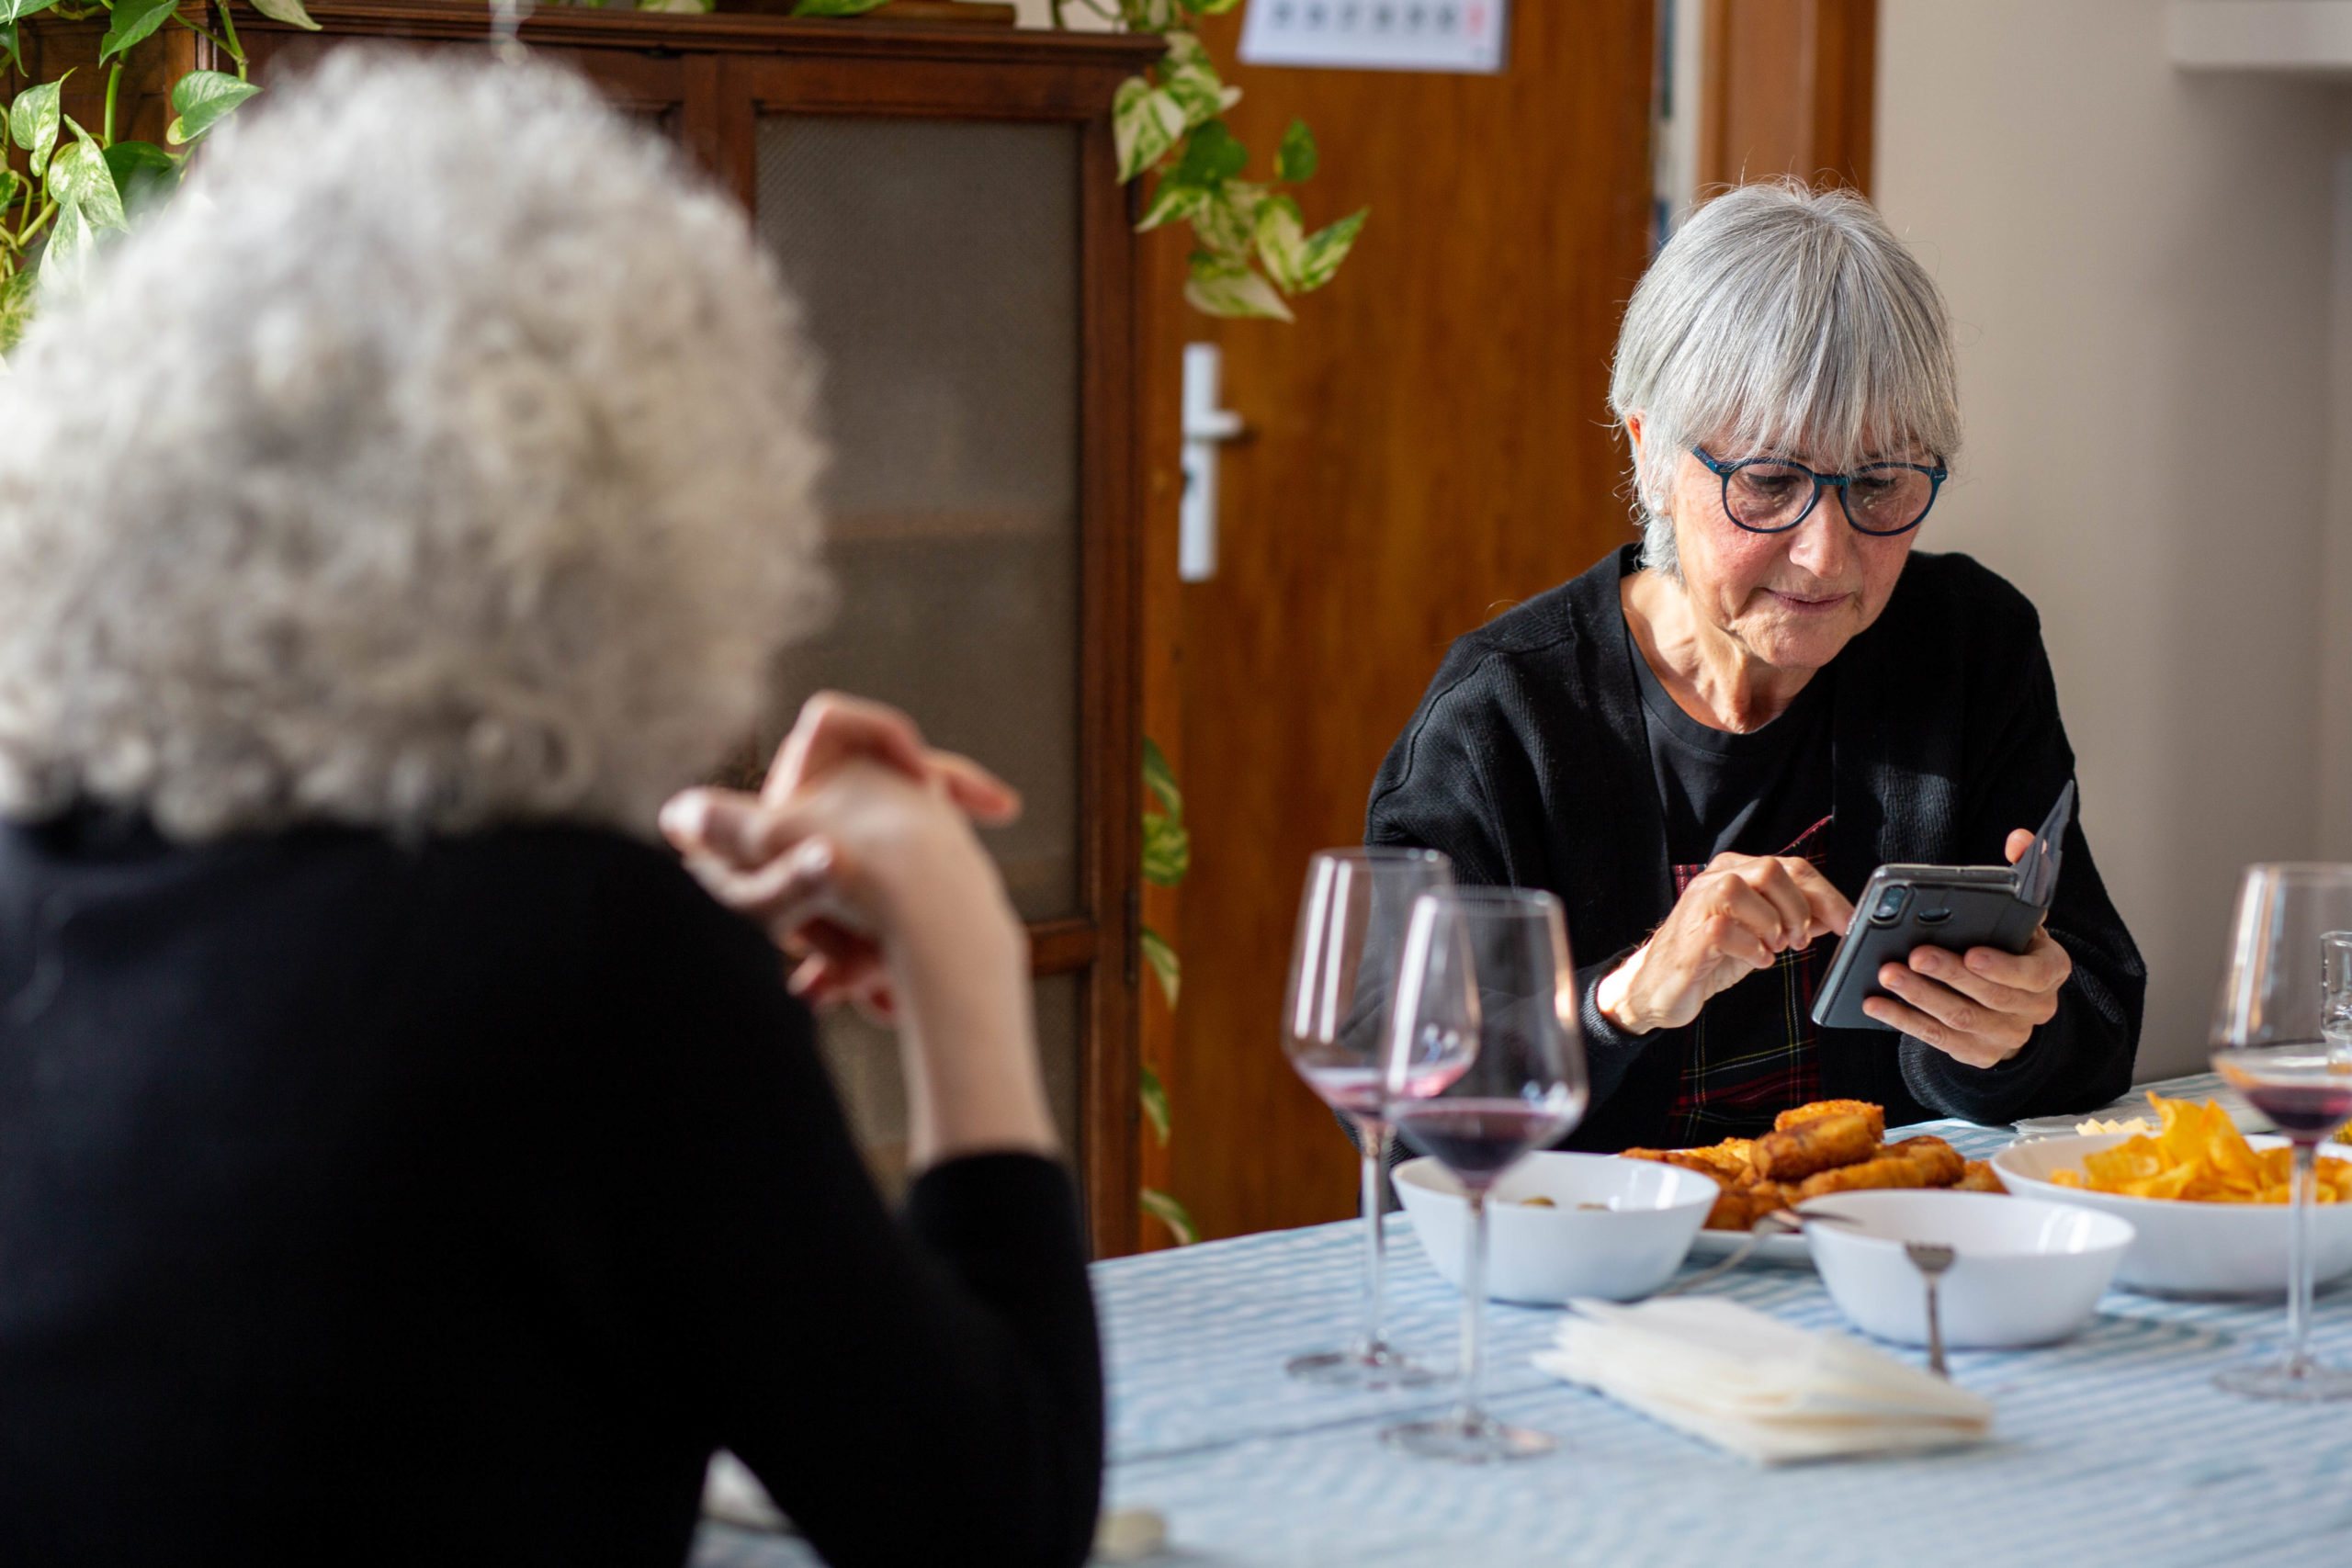 Pla mig d'una dona mirant el mòbil asseguda a la taula del menjador en un dinar